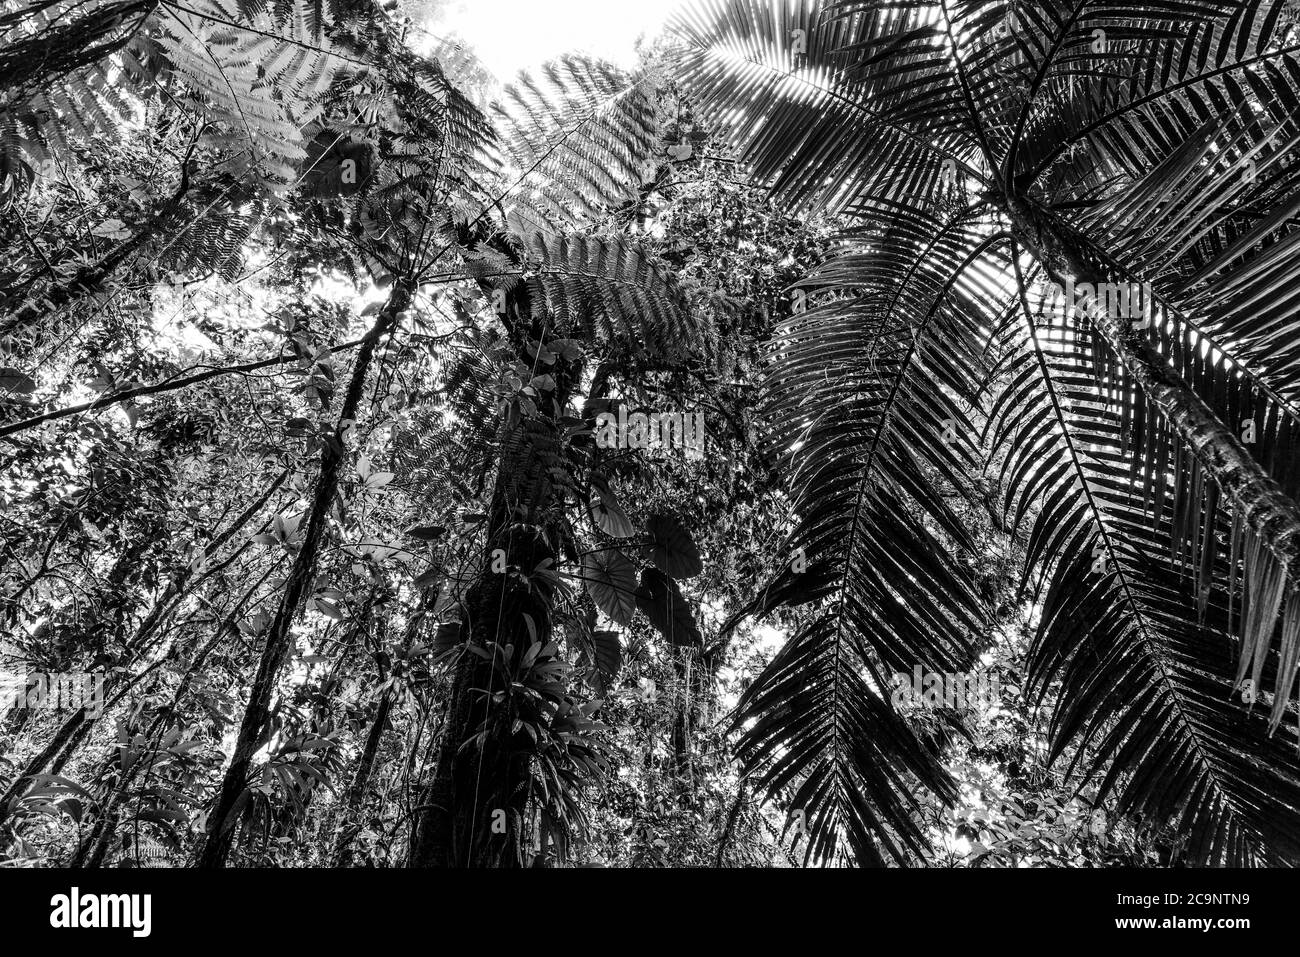 Arbres verts dans la jungle de Basse-Terre vue d'en dessous, Guadeloupe. Antilles néerlandaises, Caraïbes. Effet noir et blanc Banque D'Images